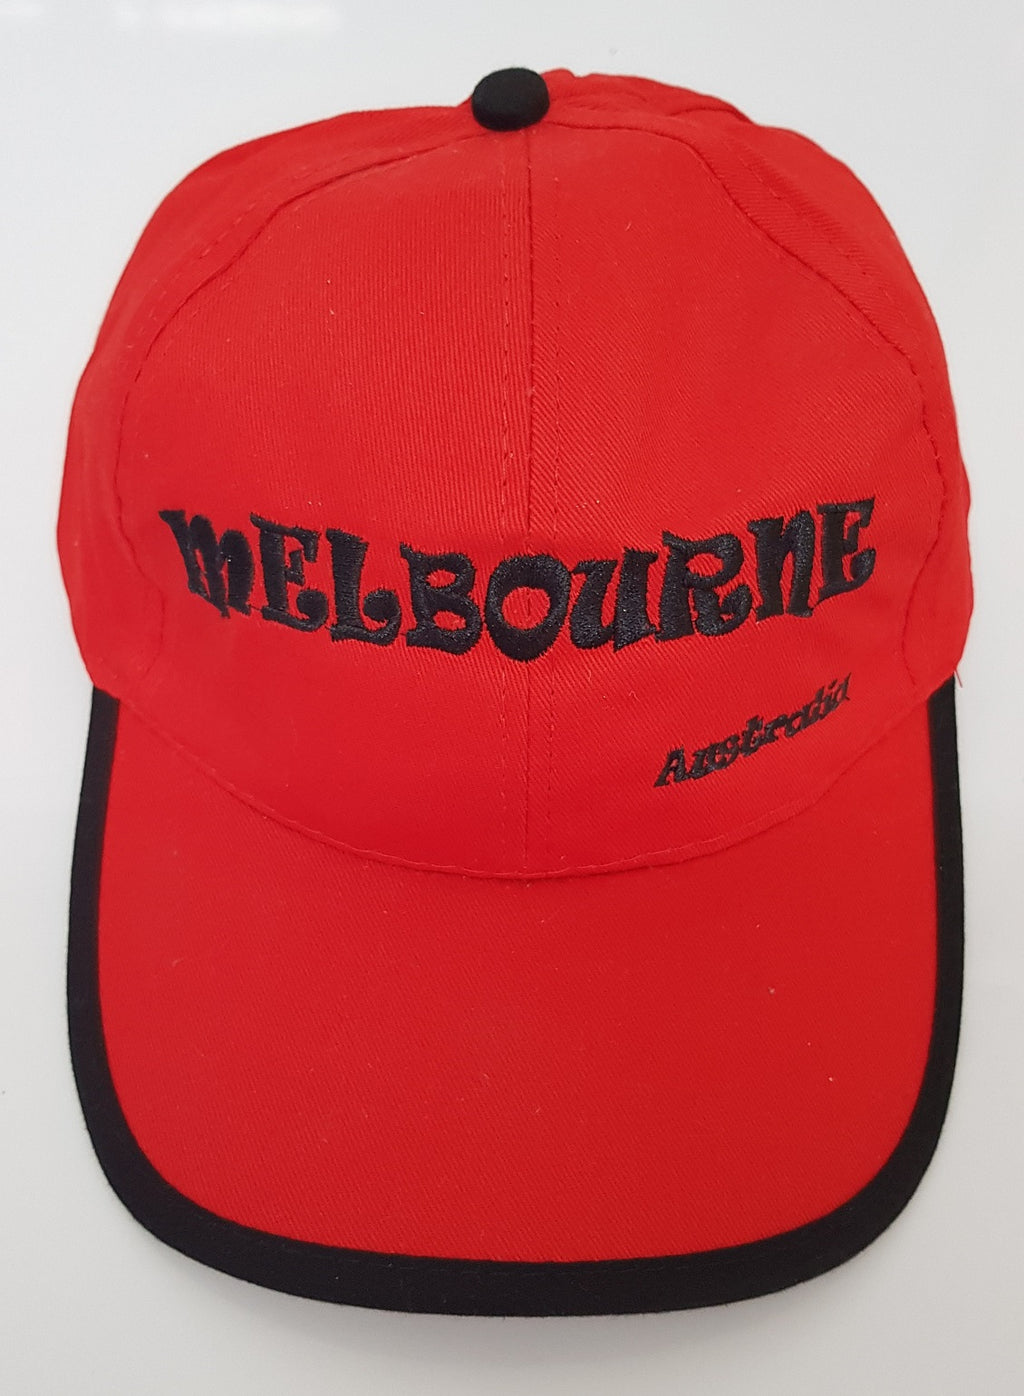 UNISEX MEN'S LADIES AUSTRALIAN SOUVENIR CAPS HATS EMBROIDERED RED & BLACK MELBOURNE